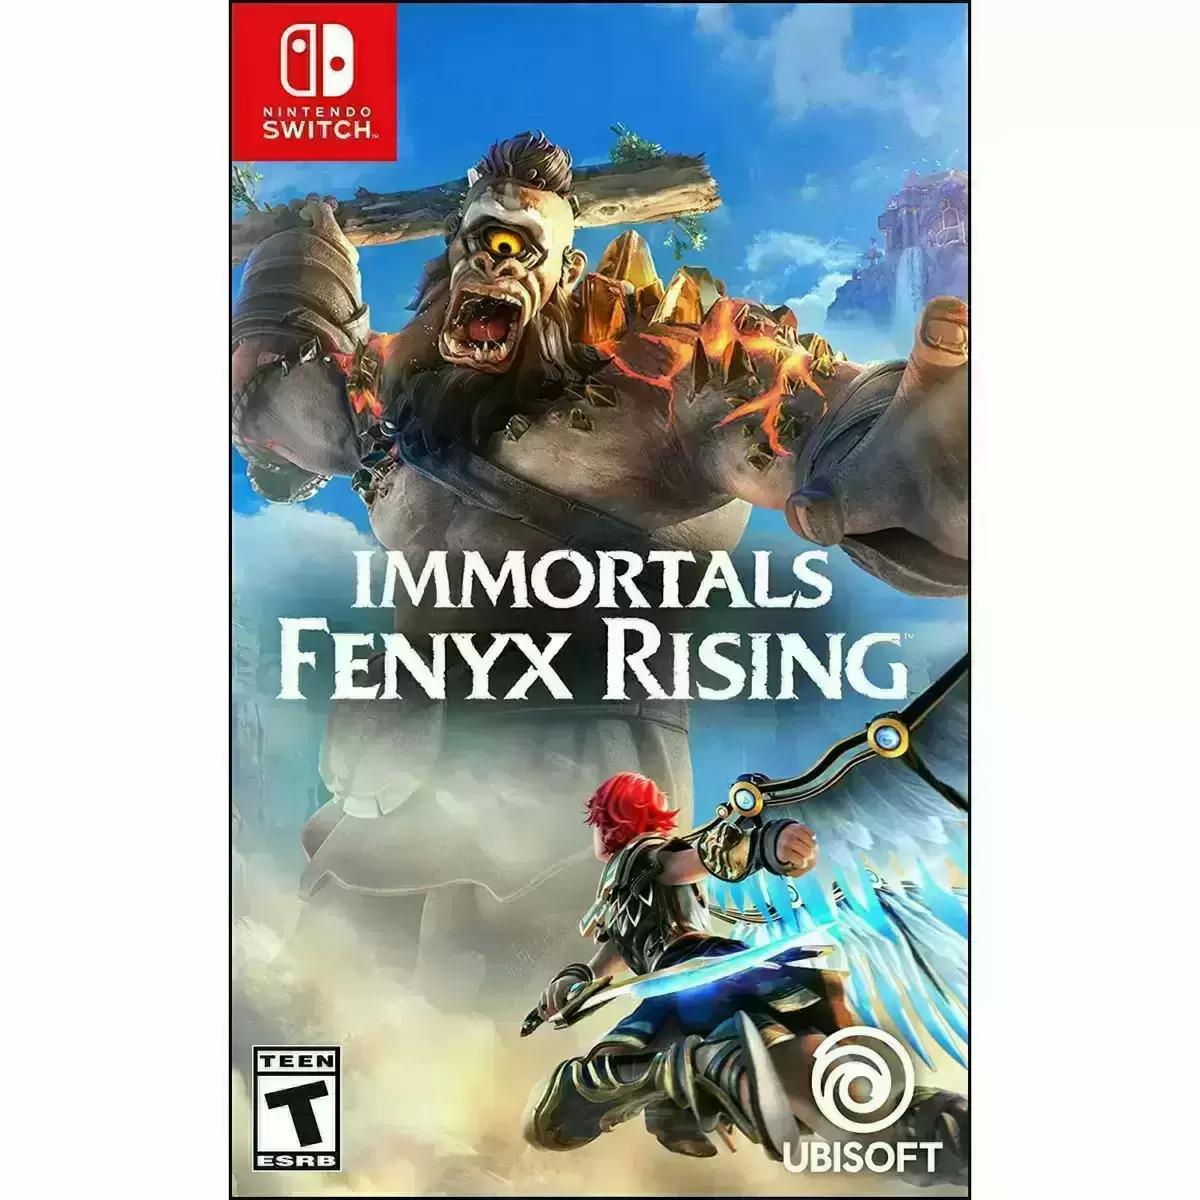 Immortals Fenyx Rising for $14.99